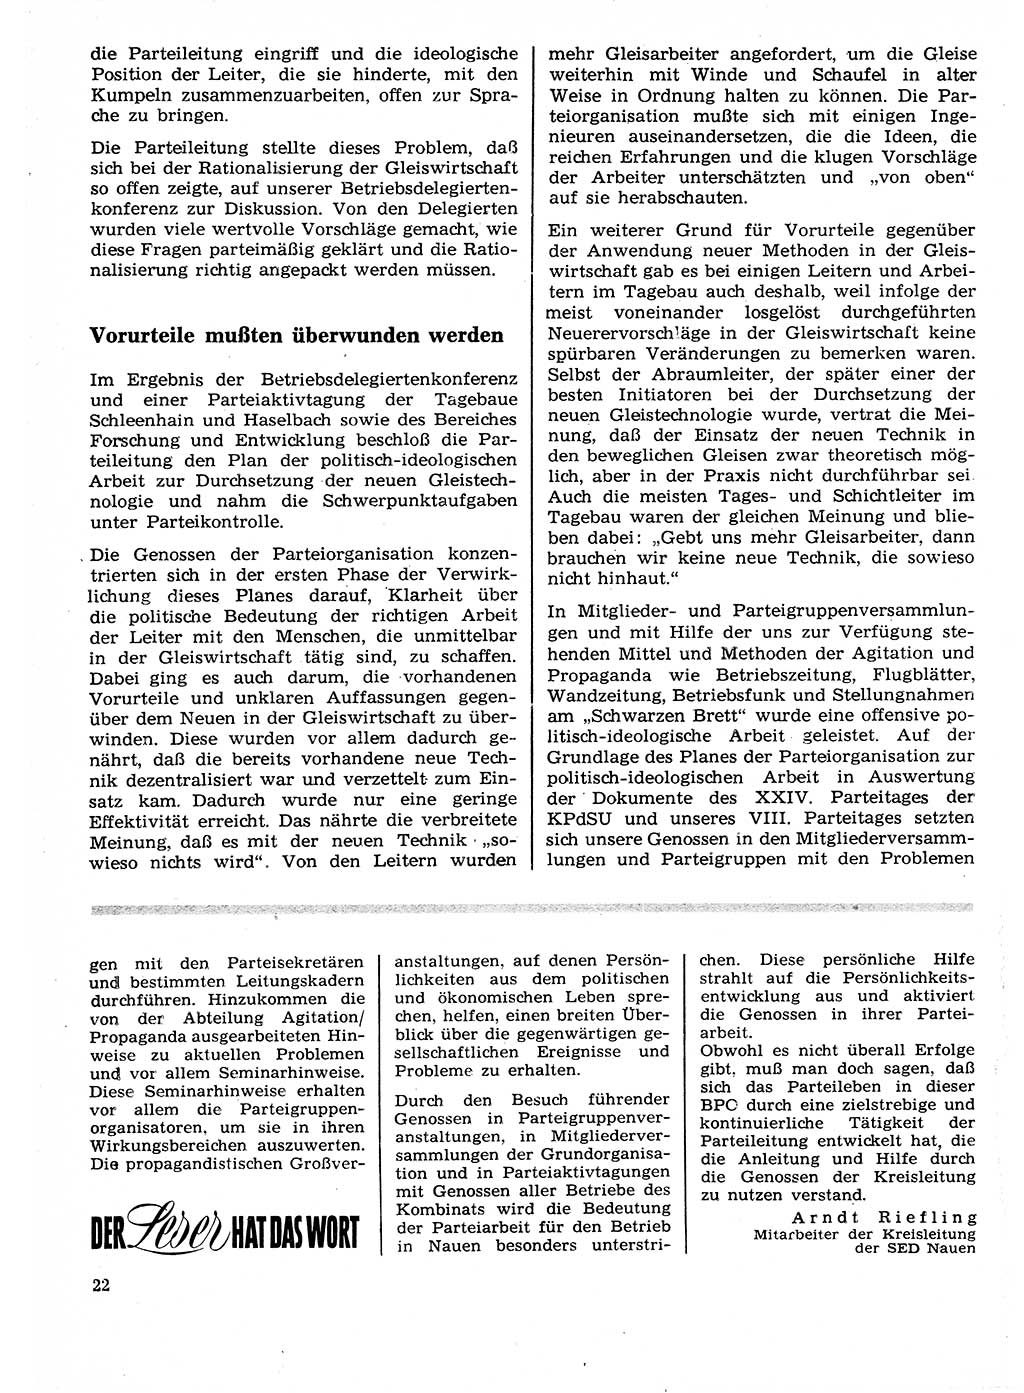 Neuer Weg (NW), Organ des Zentralkomitees (ZK) der SED (Sozialistische Einheitspartei Deutschlands) für Fragen des Parteilebens, 27. Jahrgang [Deutsche Demokratische Republik (DDR)] 1972, Seite 22 (NW ZK SED DDR 1972, S. 22)